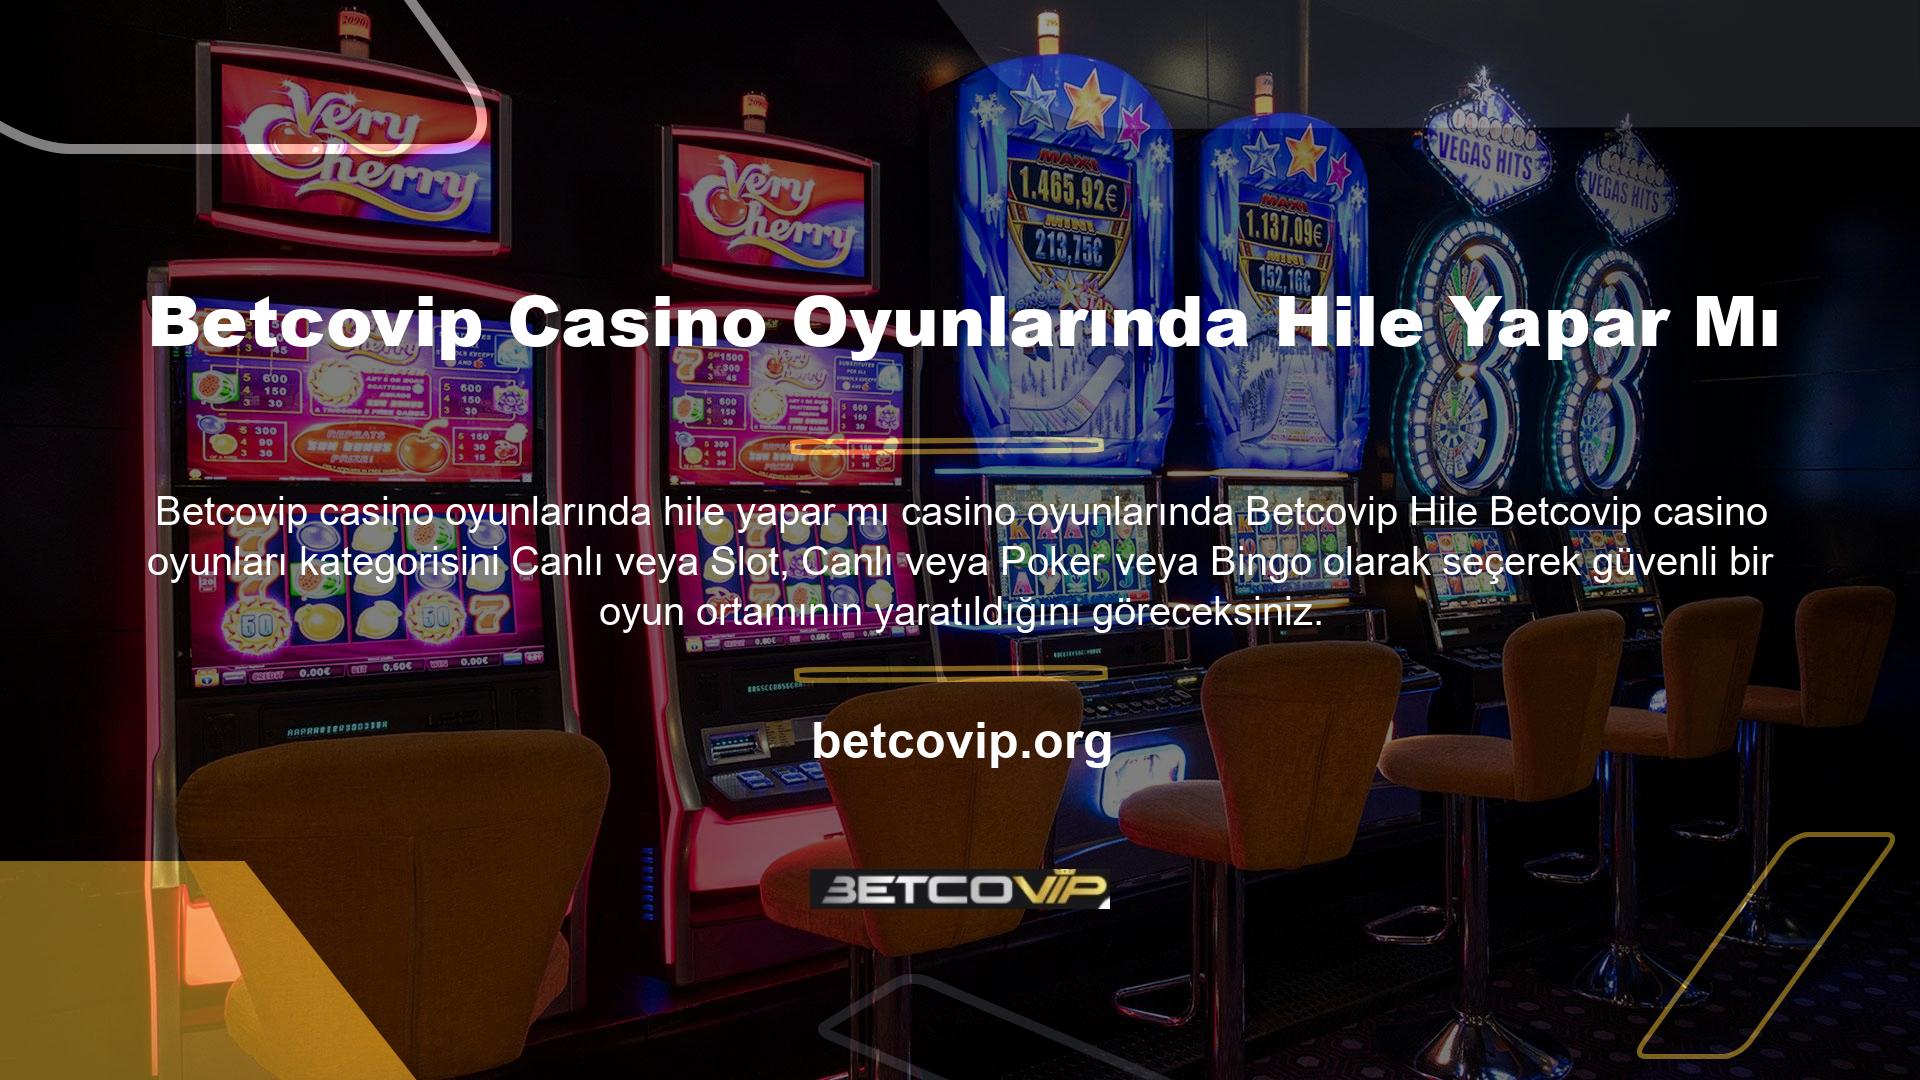 Betcovip casino oyunlarında hile yapar mı Site ve firma açısından bu tür işlemlerin ekonomi, prestij, saygı ve güven açısından gereksiz olduğunu görüyoruz